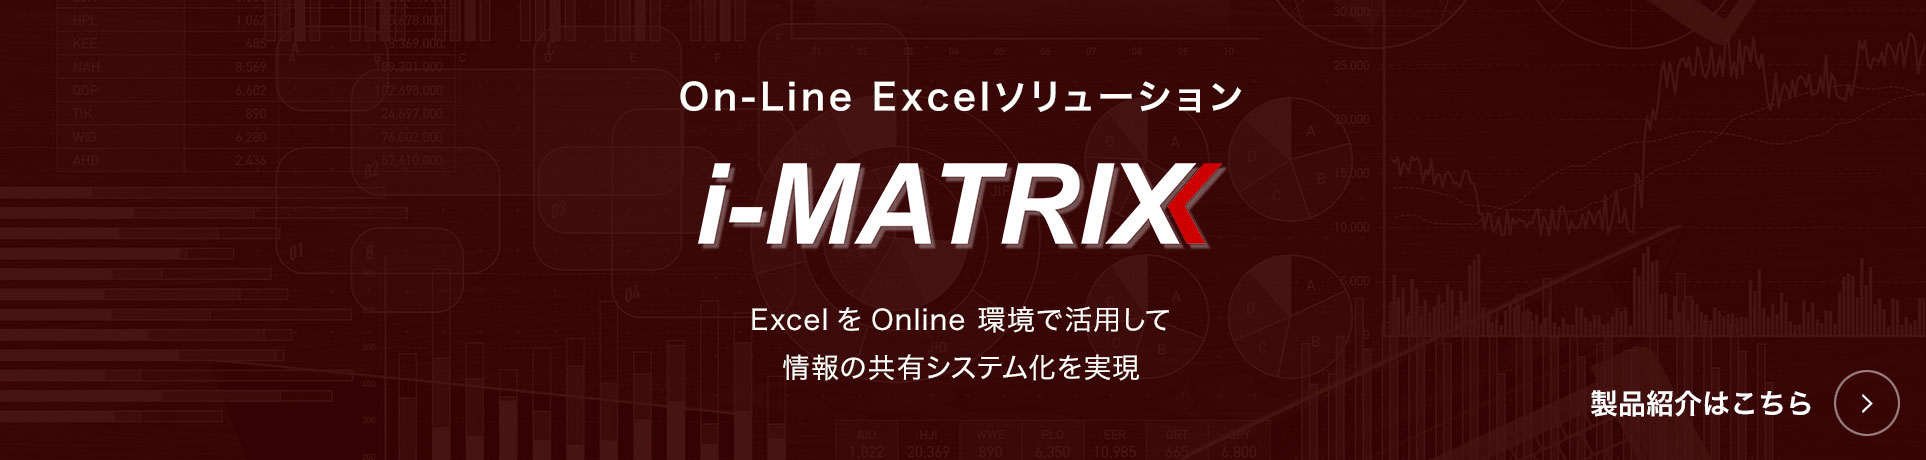 i-MATRIX 製品紹介